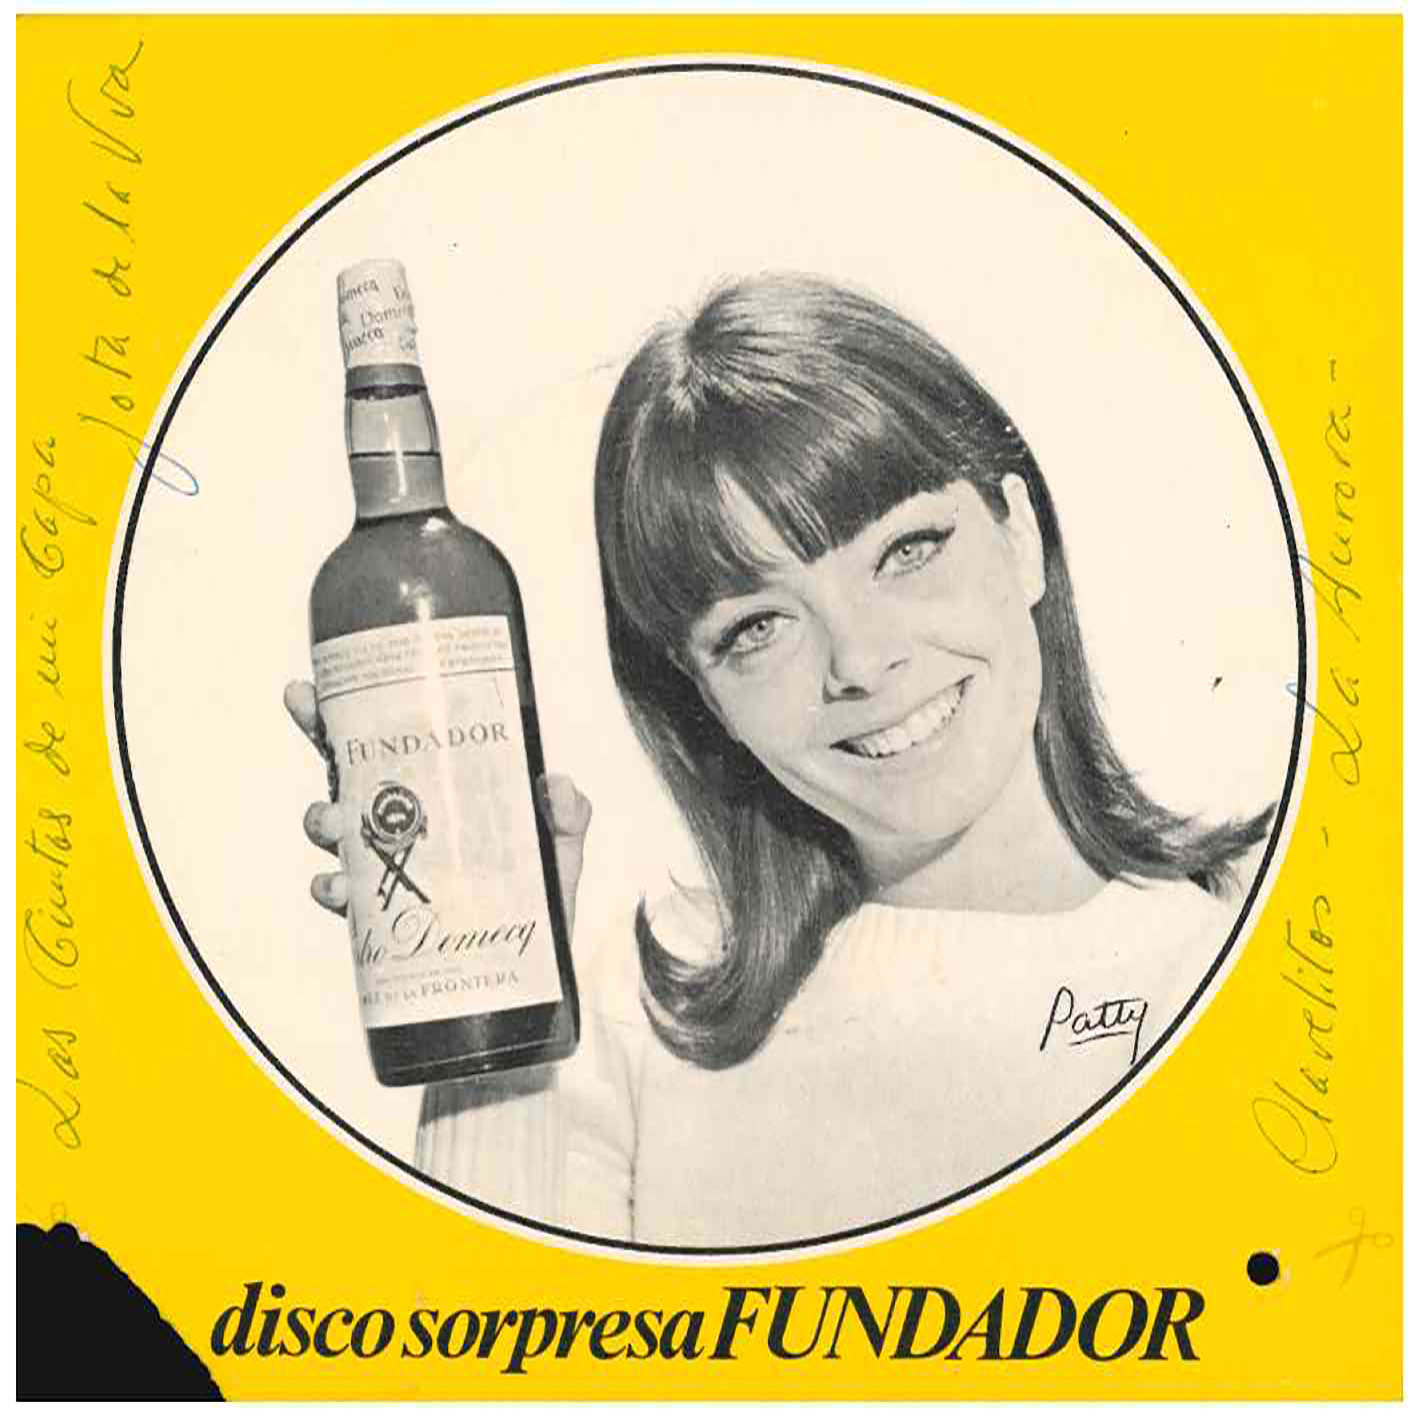 Fundador. Disco Sorpresa. Iberofon 1967